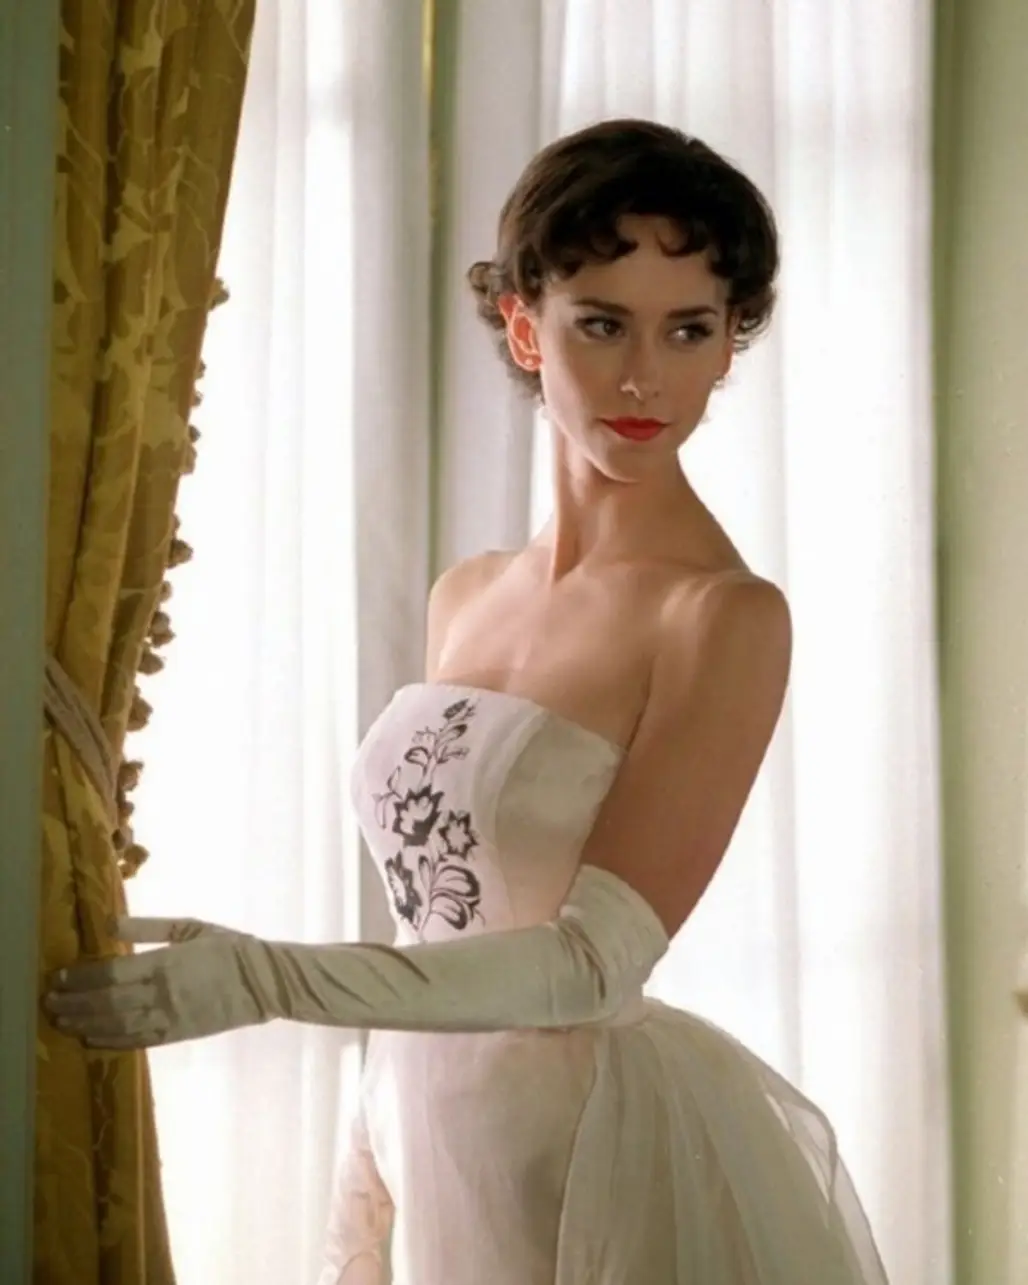 Jennifer Love Hewitt as Audrey Hepburn